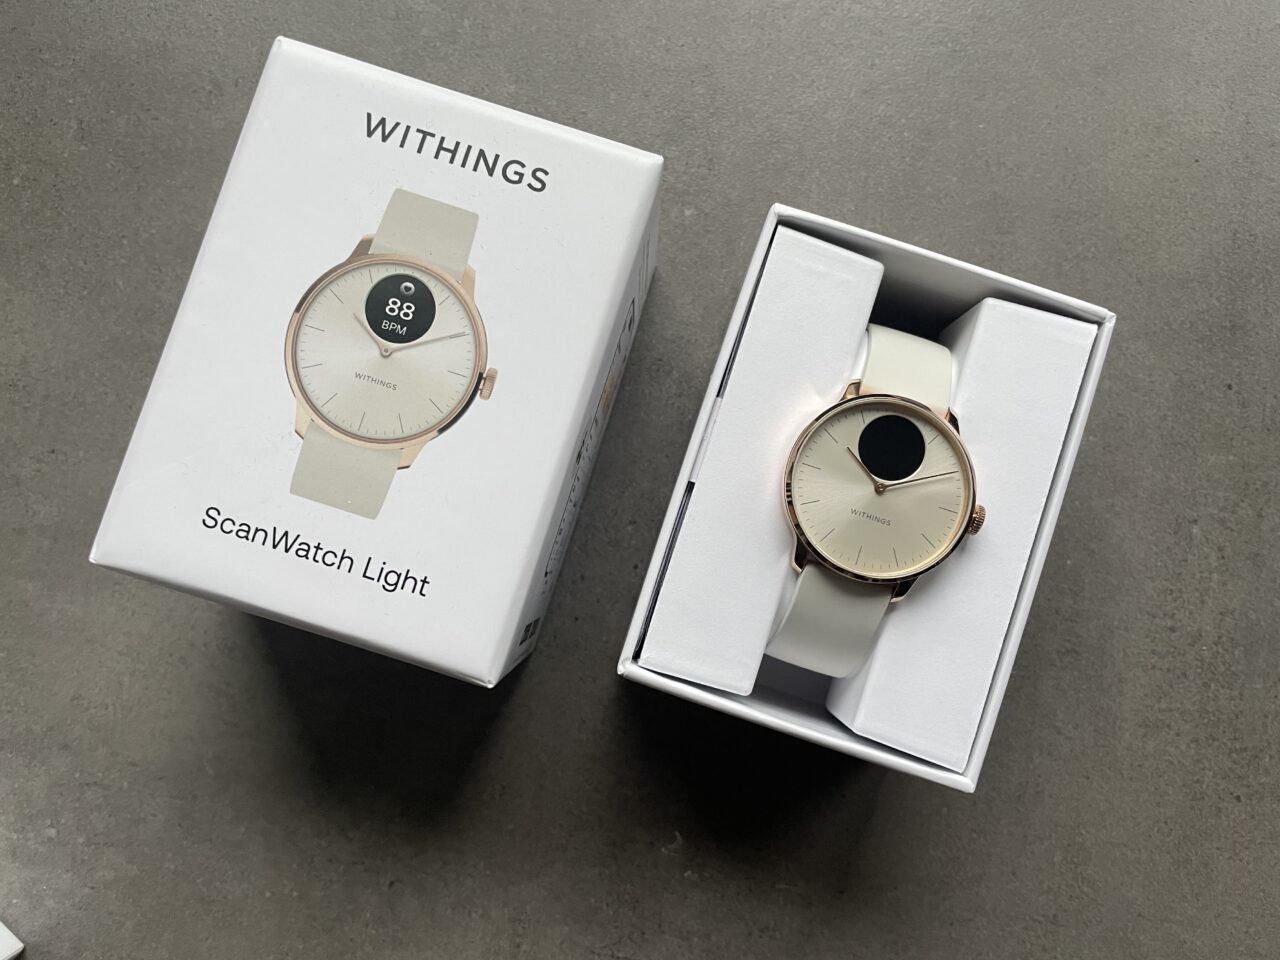 Zegarek Withings ScanWatch Light w różowo-złotej obudowie na białym pasku, umieszczony w otwartym białym pudełku, obok którego leży zamknięte pudełko z nadrukowanym obrazem tego zegarka.